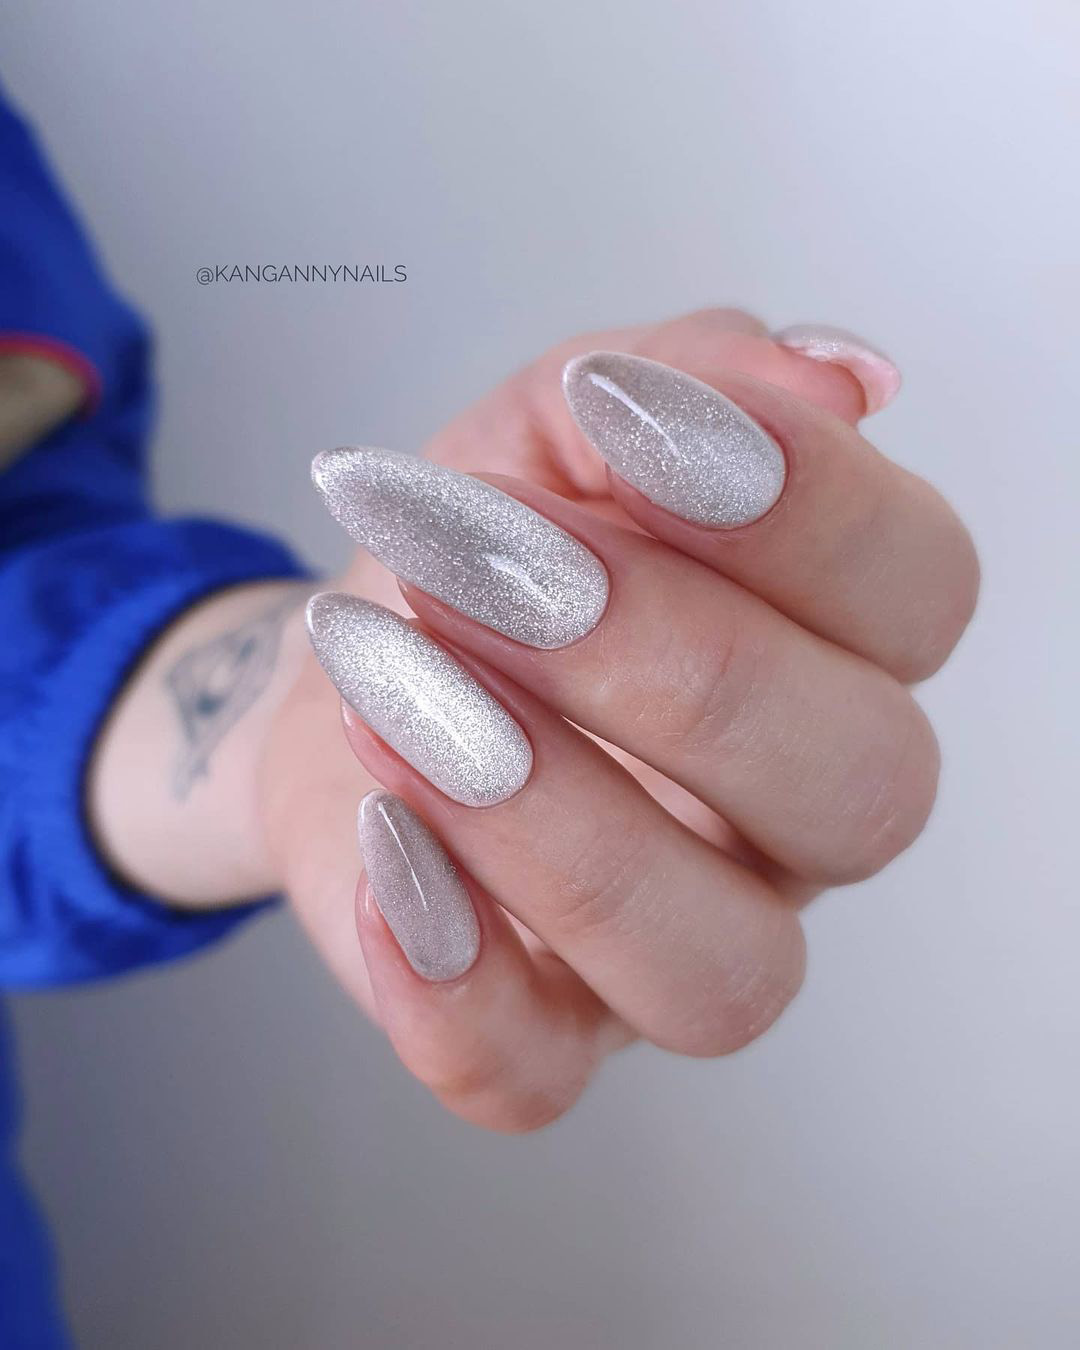 classy wedding nails shimmer silver gloss kangannynails